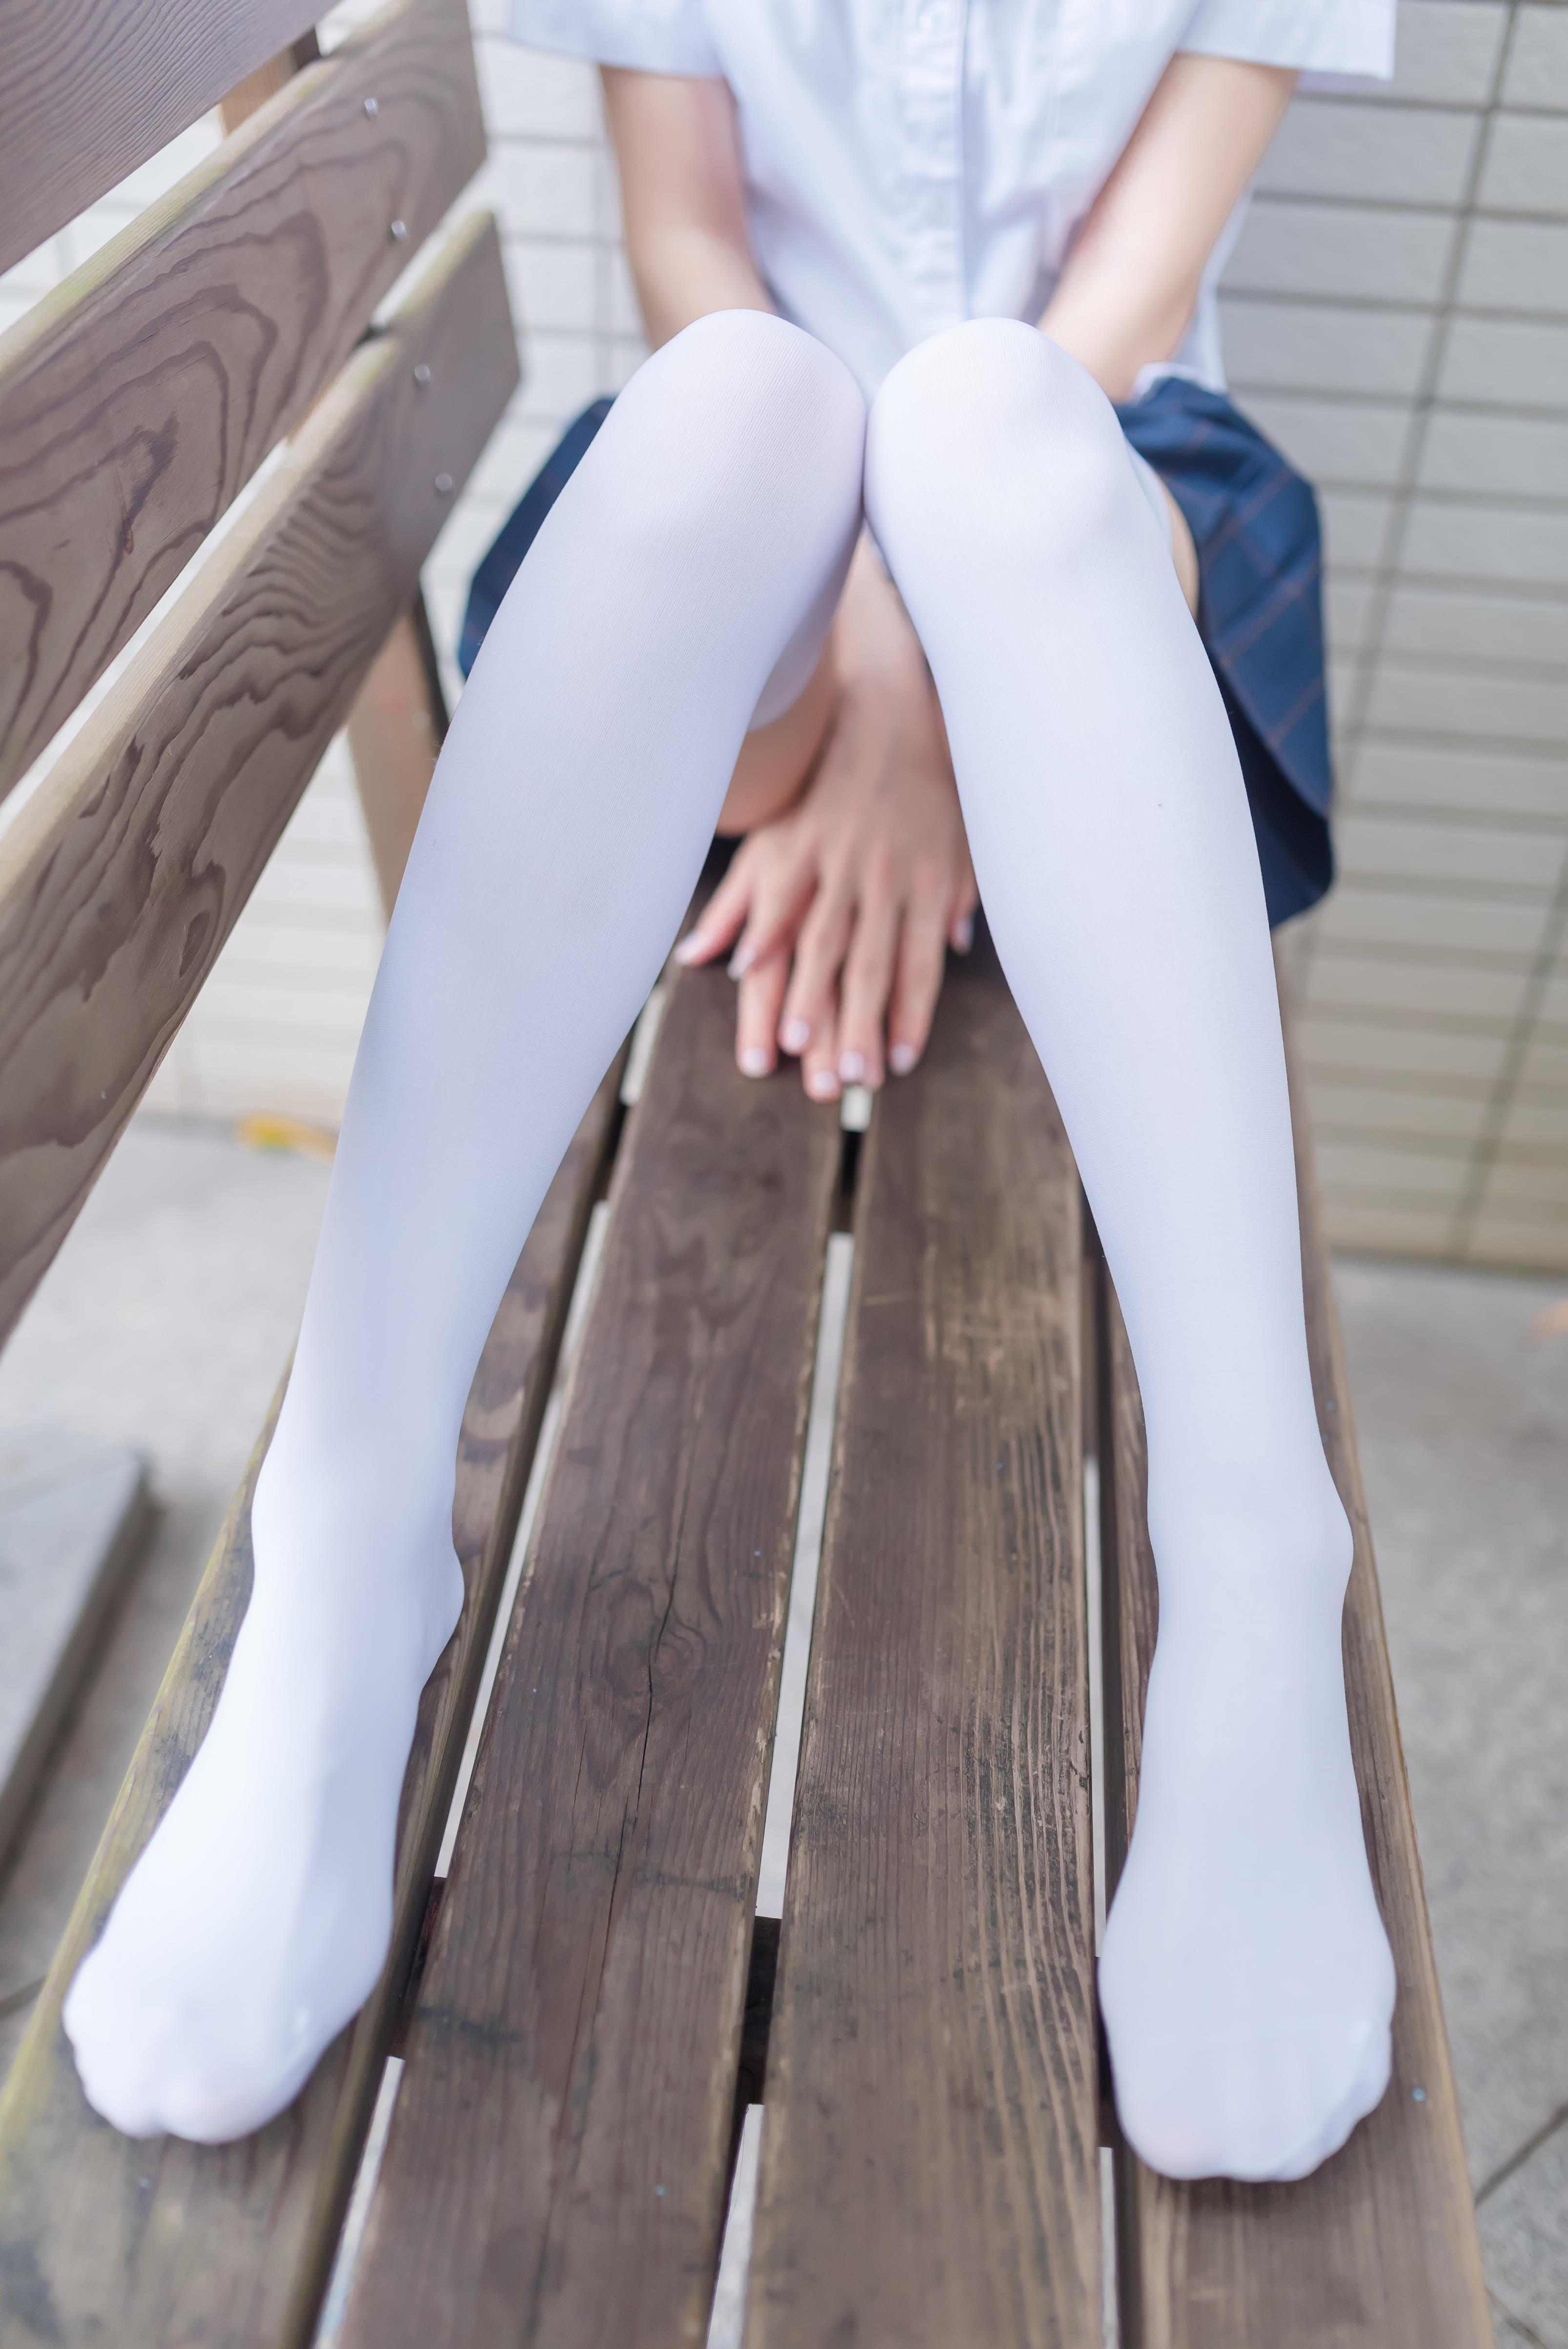 [风之领域]NO.036 高中女生小学妹 白色短袖与蓝色短裙加白色丝袜美腿性感私房写真集,